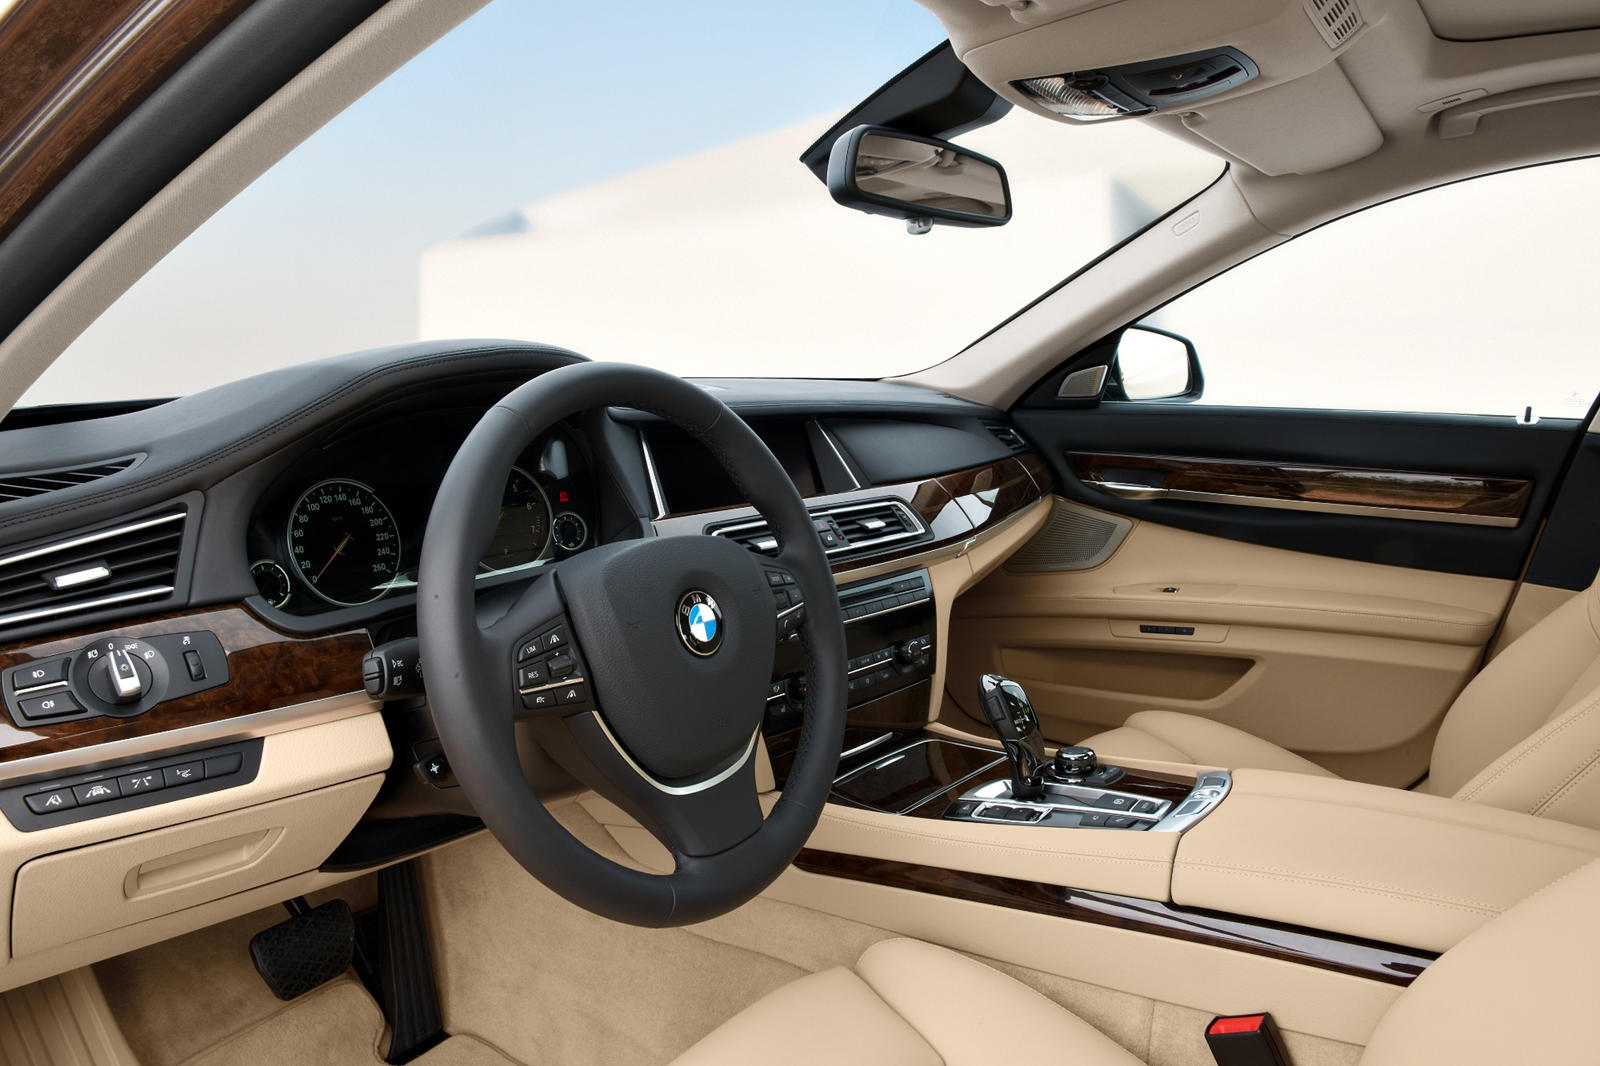 2014 BMW 7 Series Interior Photos | CarBuzz